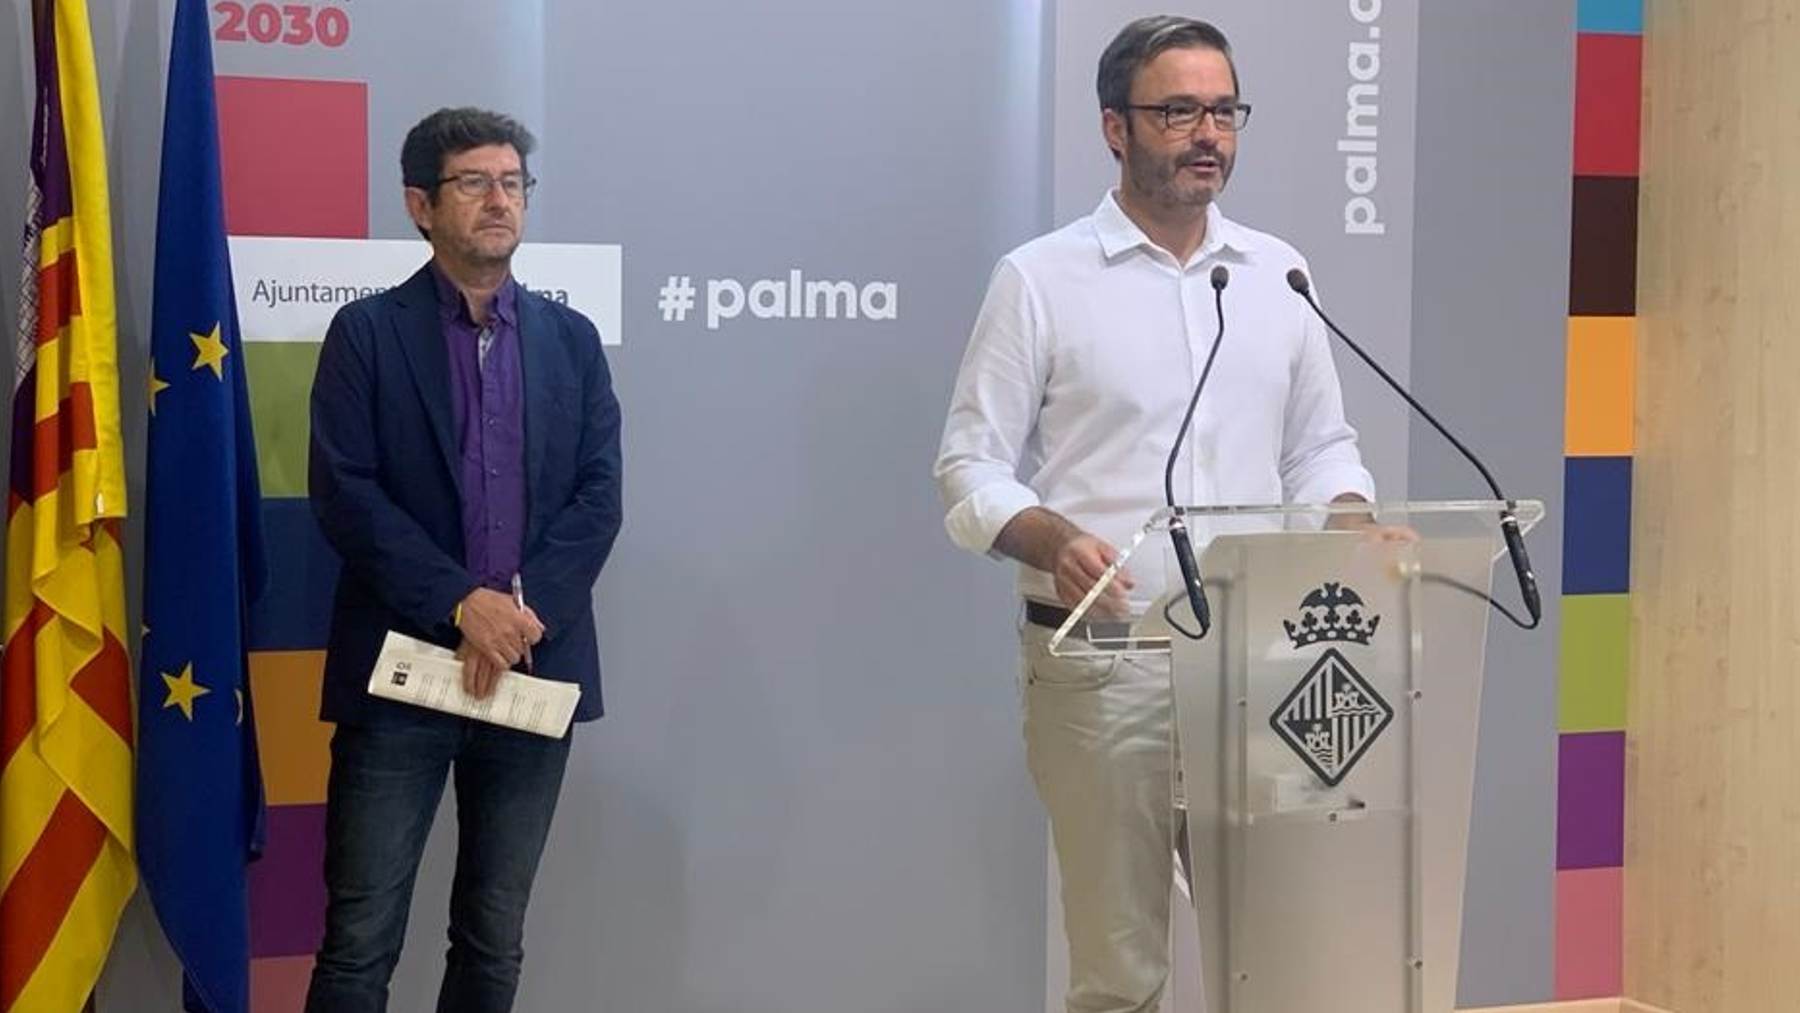 El alcalde socialista de Palma, José Hila y el edil de Podemos Alberto Jarabo.